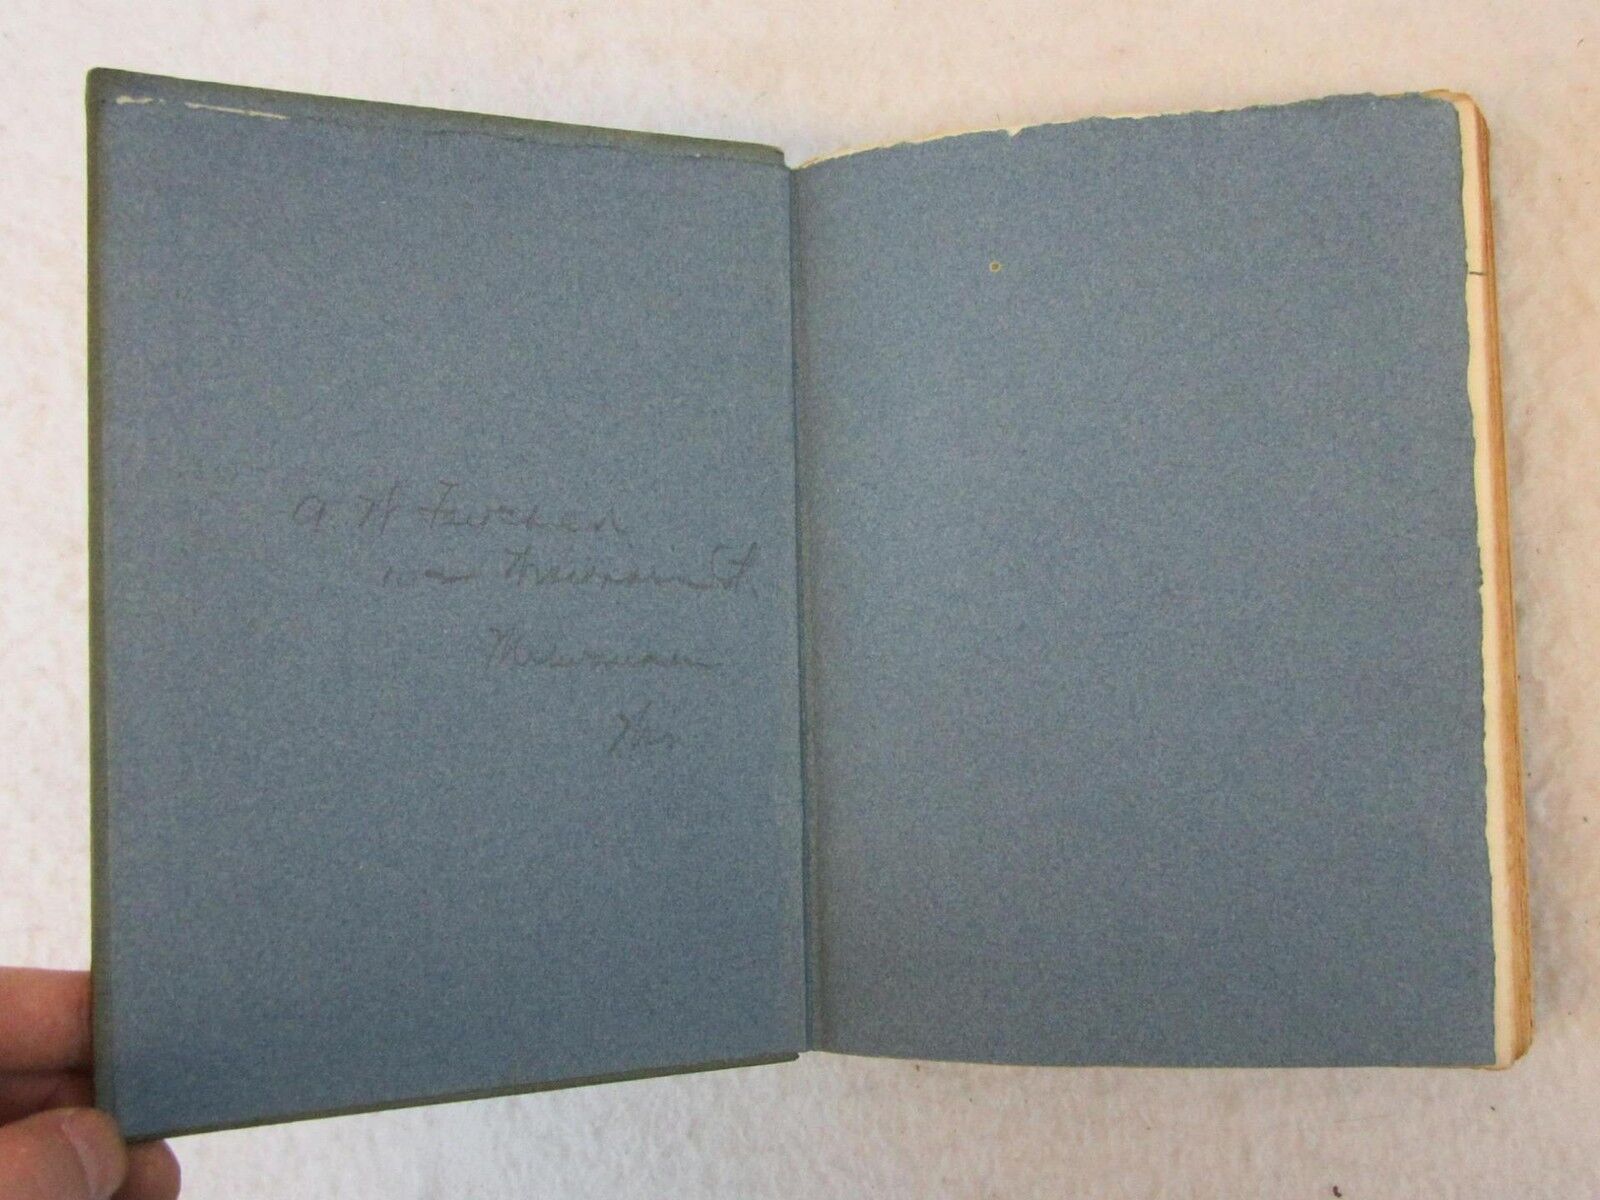 THE POETICAL WORKS OF OSCAR WILDE 1908 Thomas B. Mosher, Maine 1/750 Copies GORĄCY